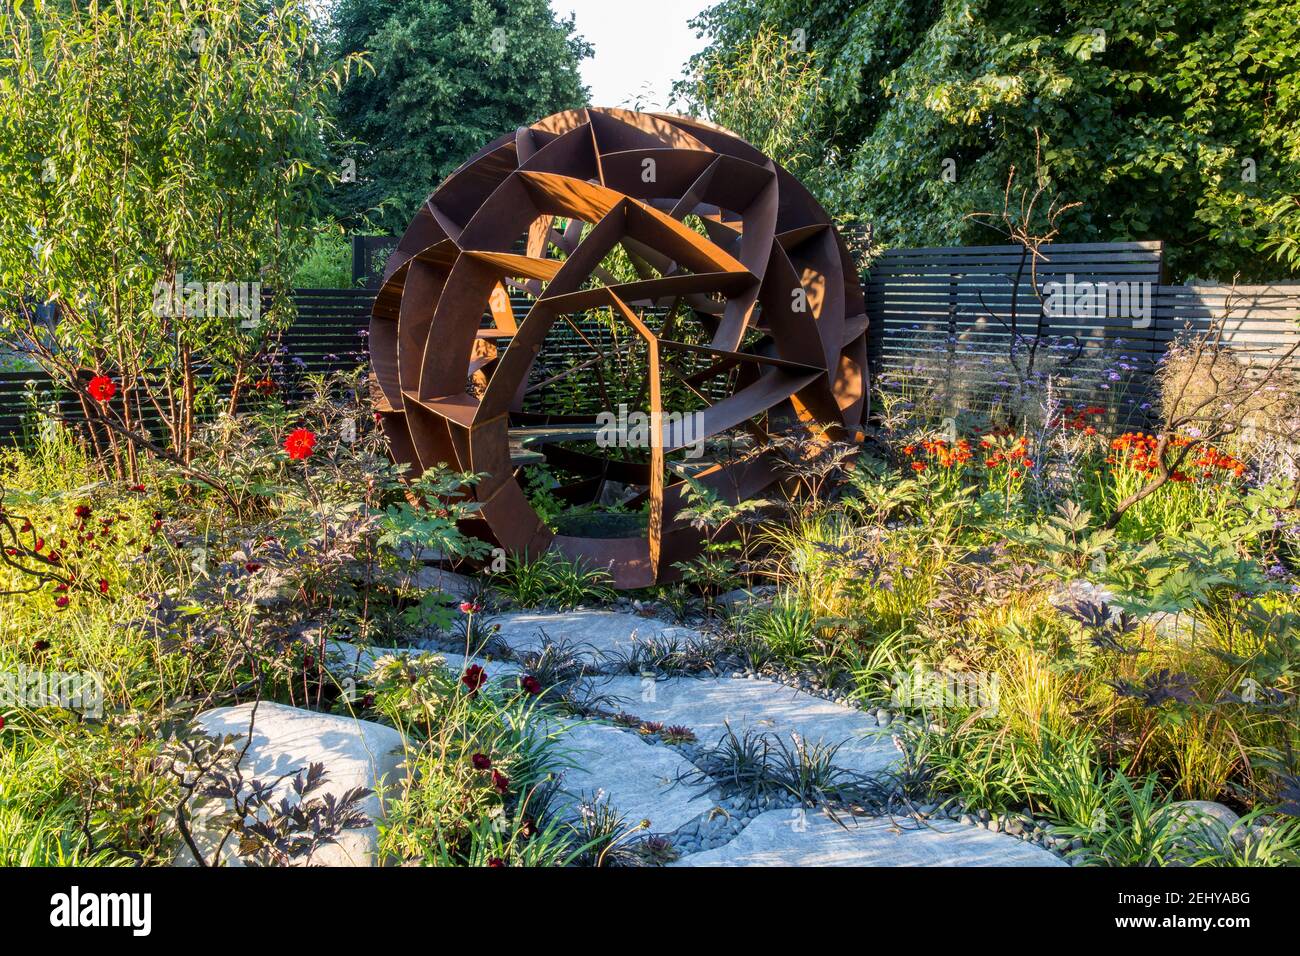 Zeitgenössischer Garten mit großen Caledonischen Steinpflasterplatten Pfad aus kortenförmigem Stahlbau Sitzbereich mit Sommerblumenbeeten grenzt an England GB Großbritannien Stockfoto